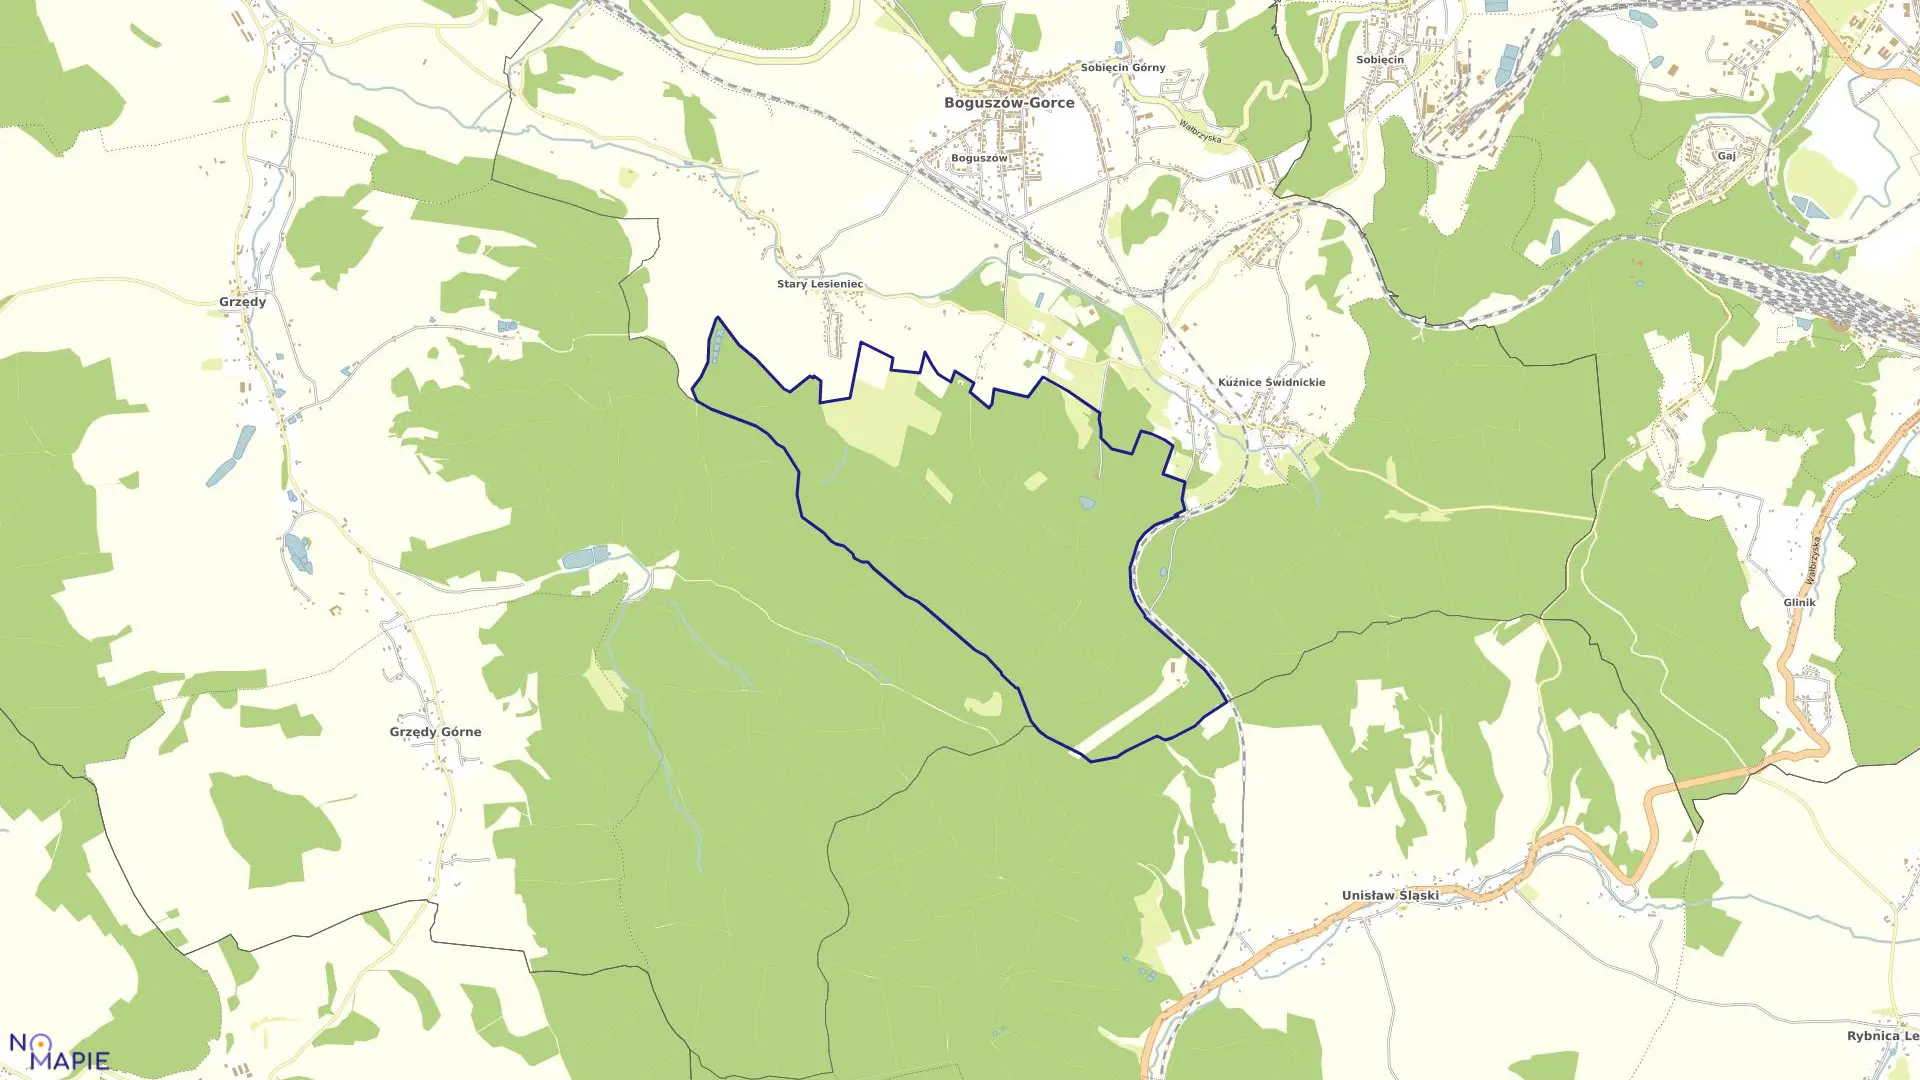 Mapa obrębu NR 6 STARY LESIENIEC w mieście Boguszów-Gorce